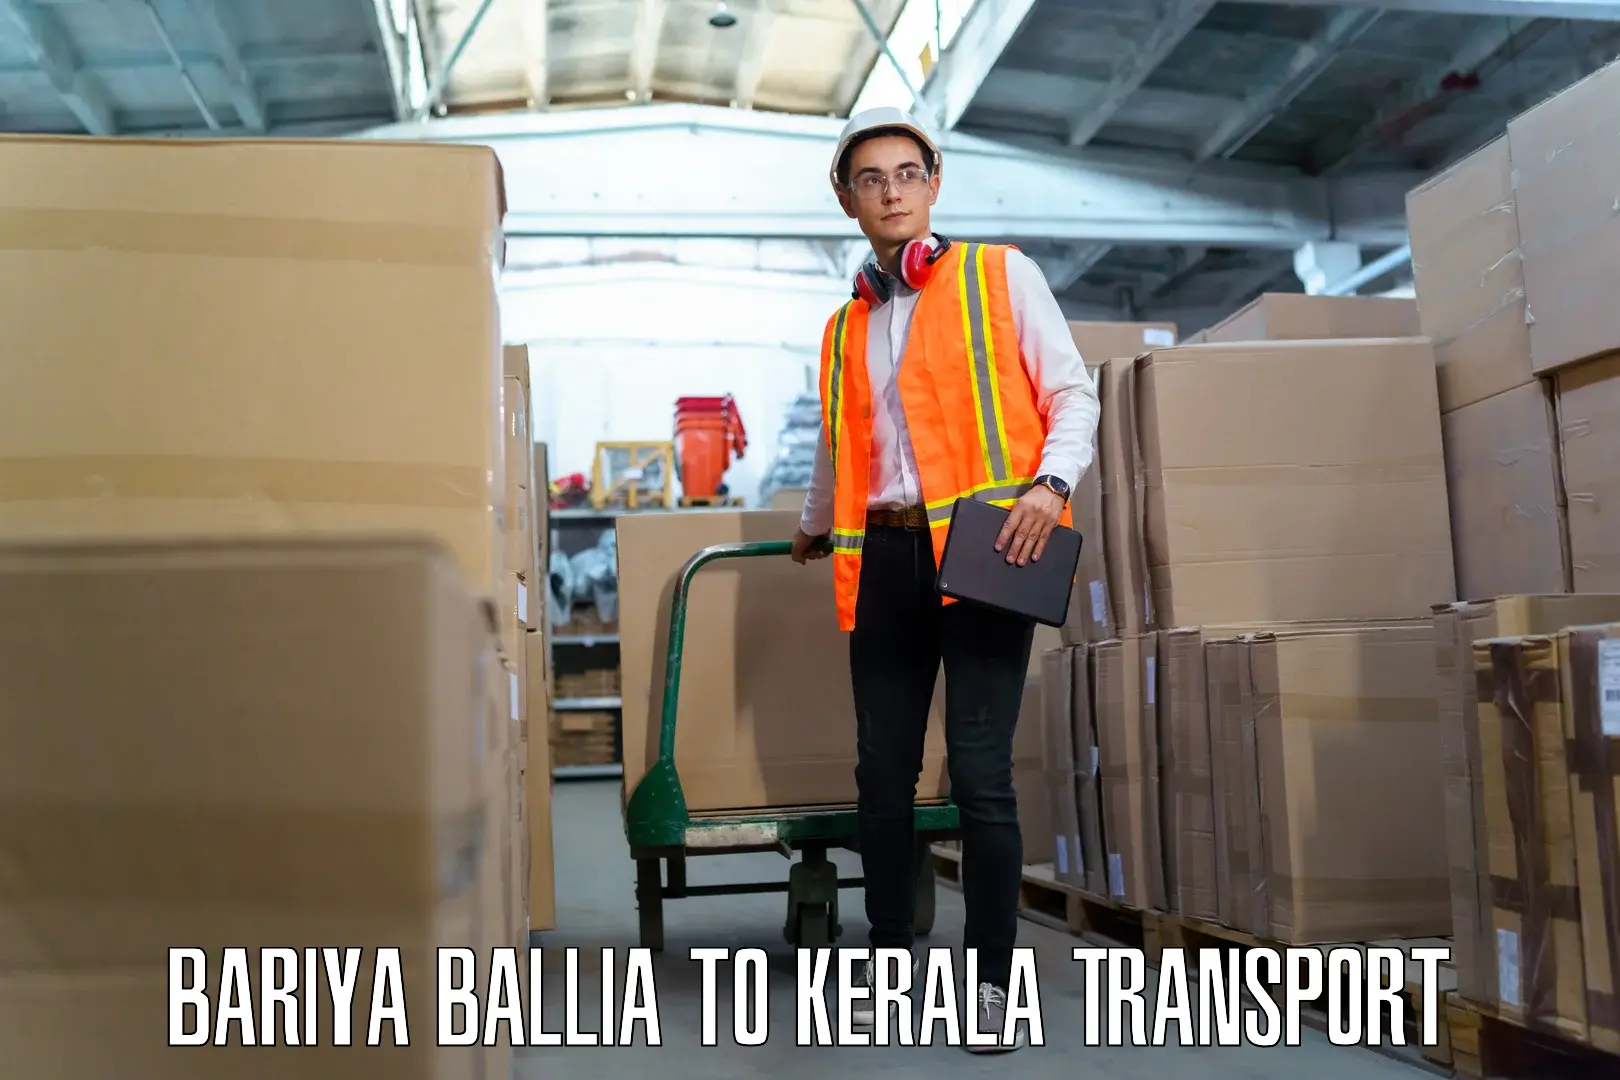 Daily transport service Bariya Ballia to Kallachi